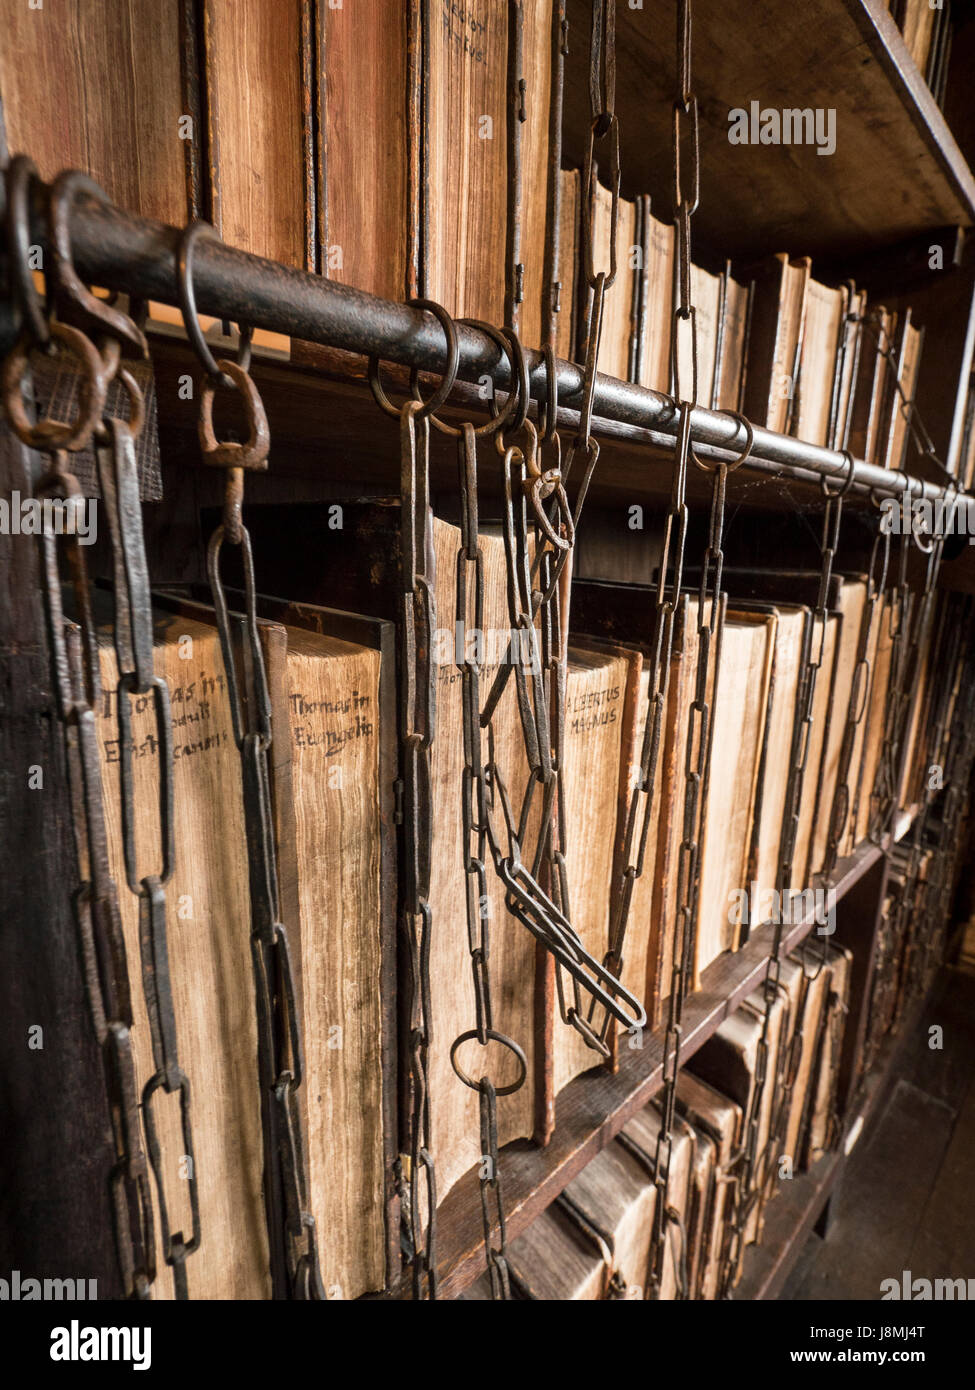 Eine verkettete Bibliothek, gegründet im Jahre 1598 oberhalb St. Wulfram Kirche in Grantham, England ist immer noch vorhanden. Stockfoto